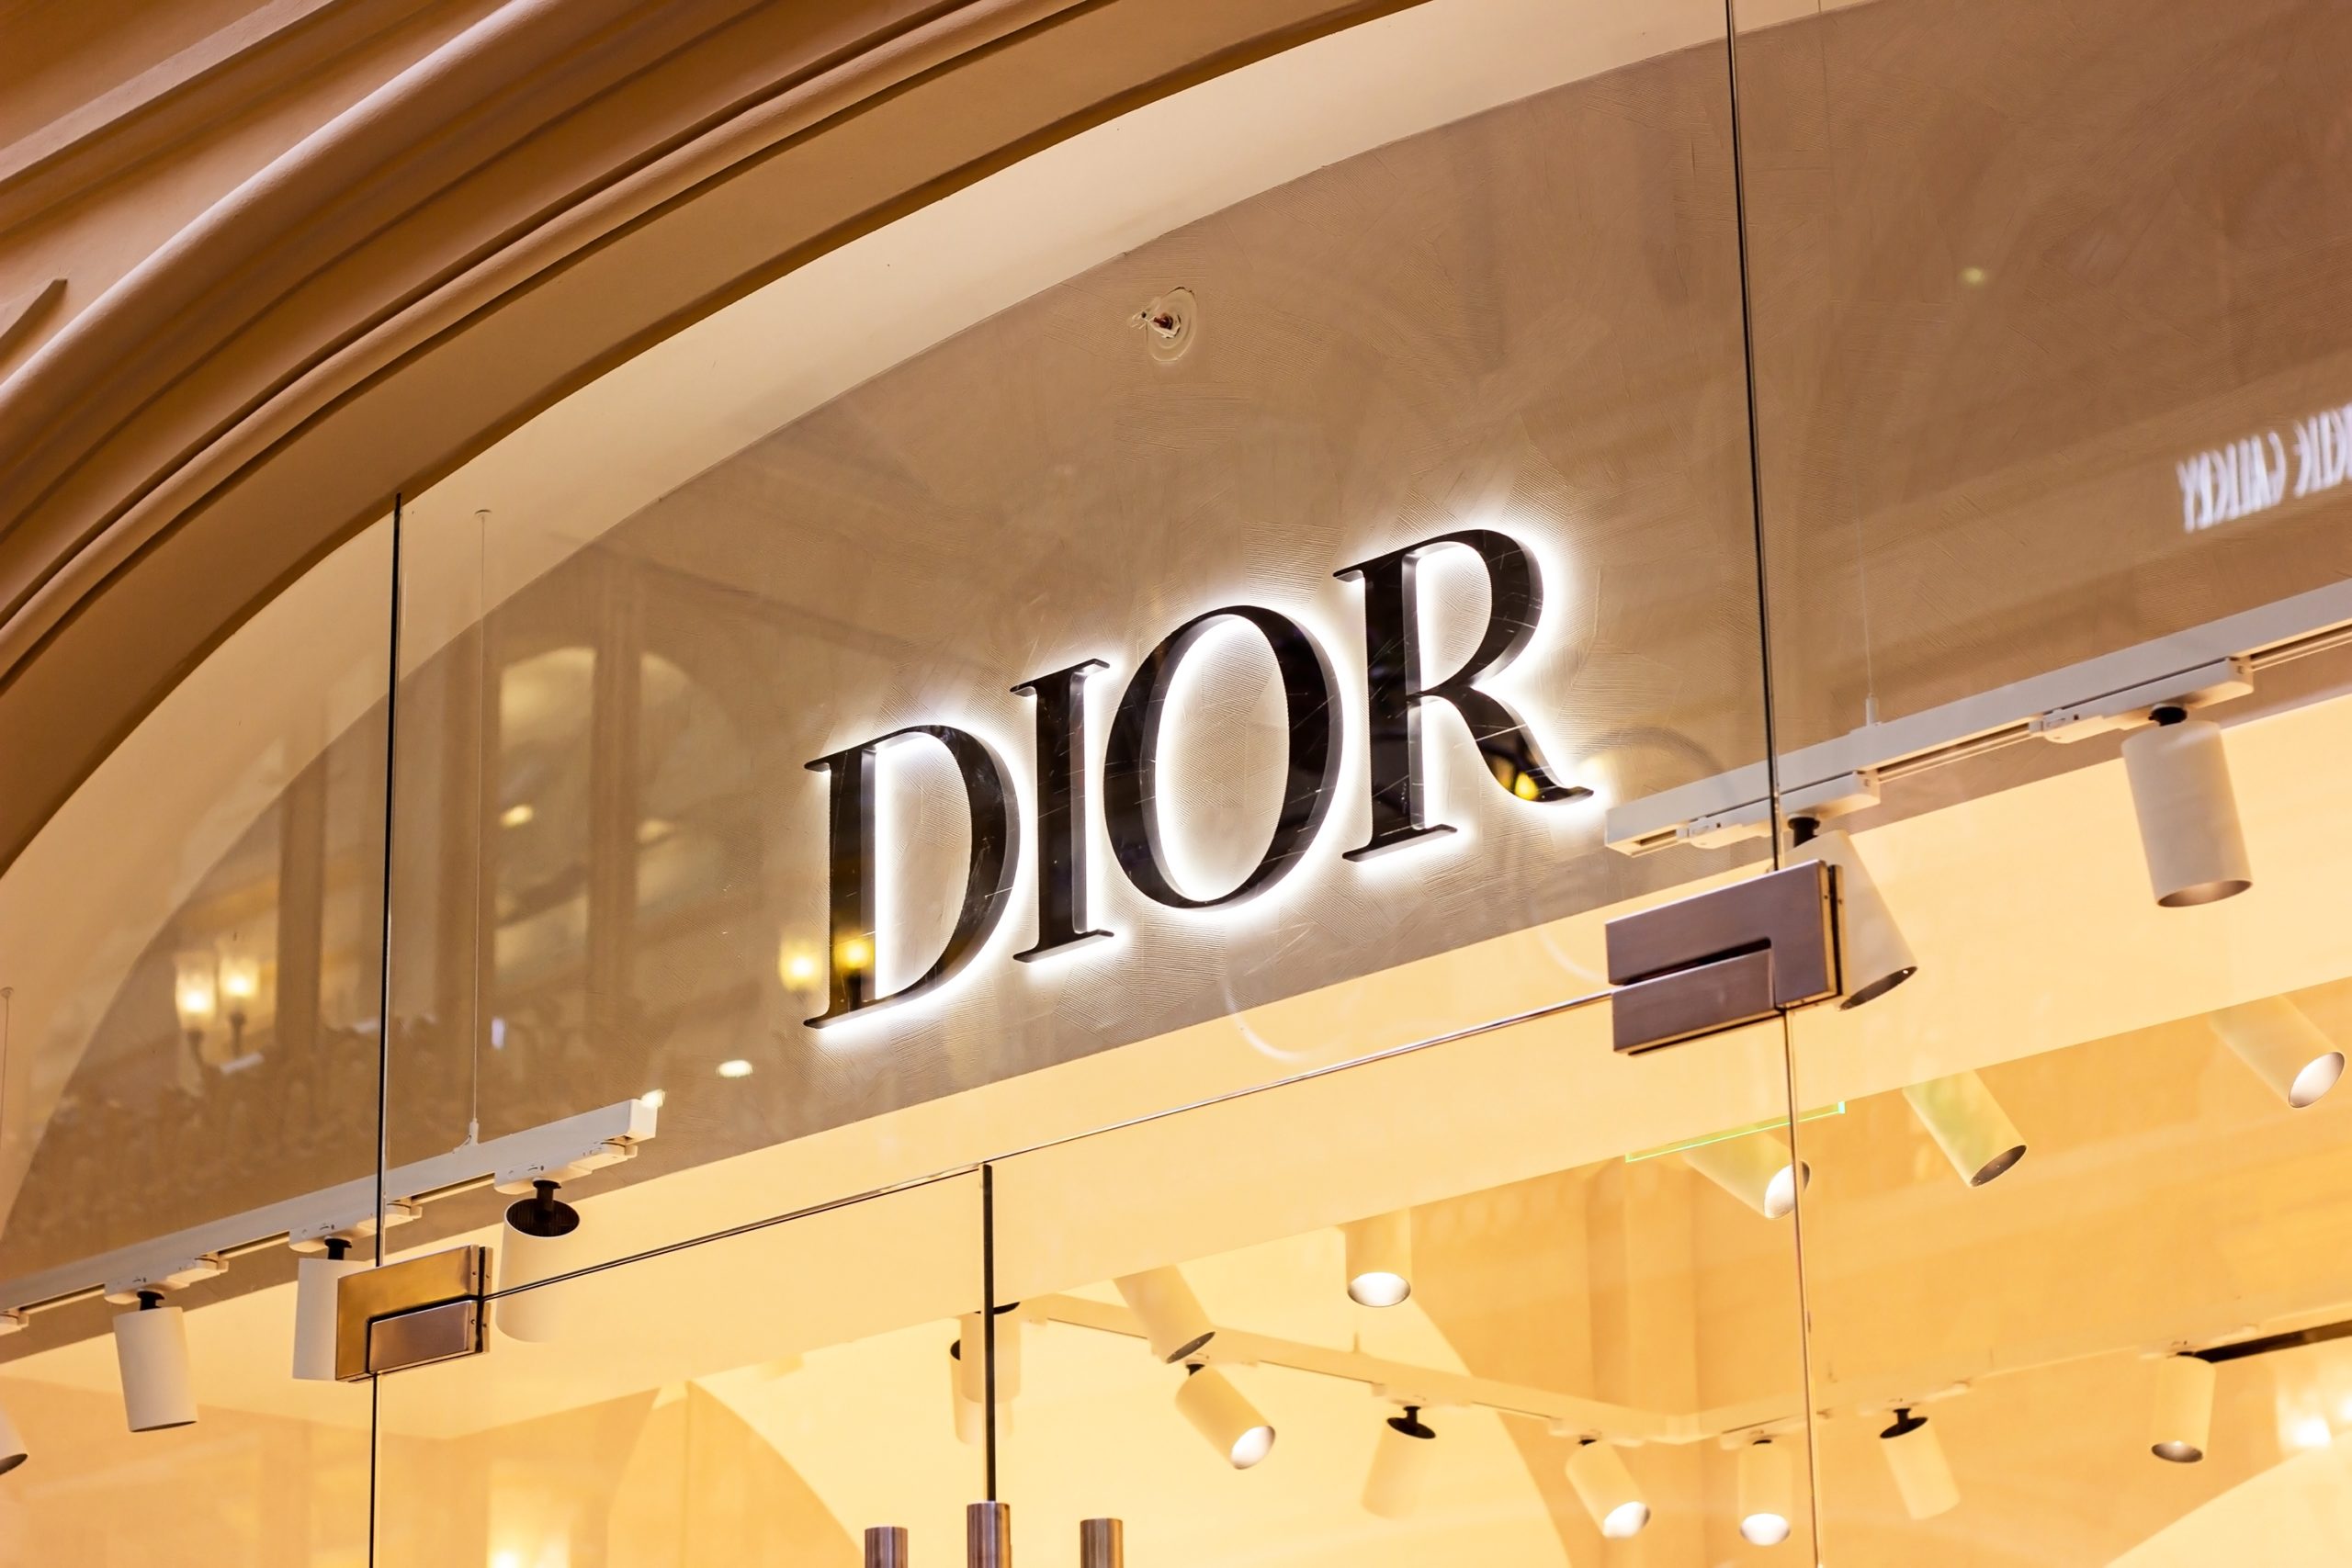 Dior, controllata sottoposta ad amministrazione giudiziaria per sfruttamento del lavoro